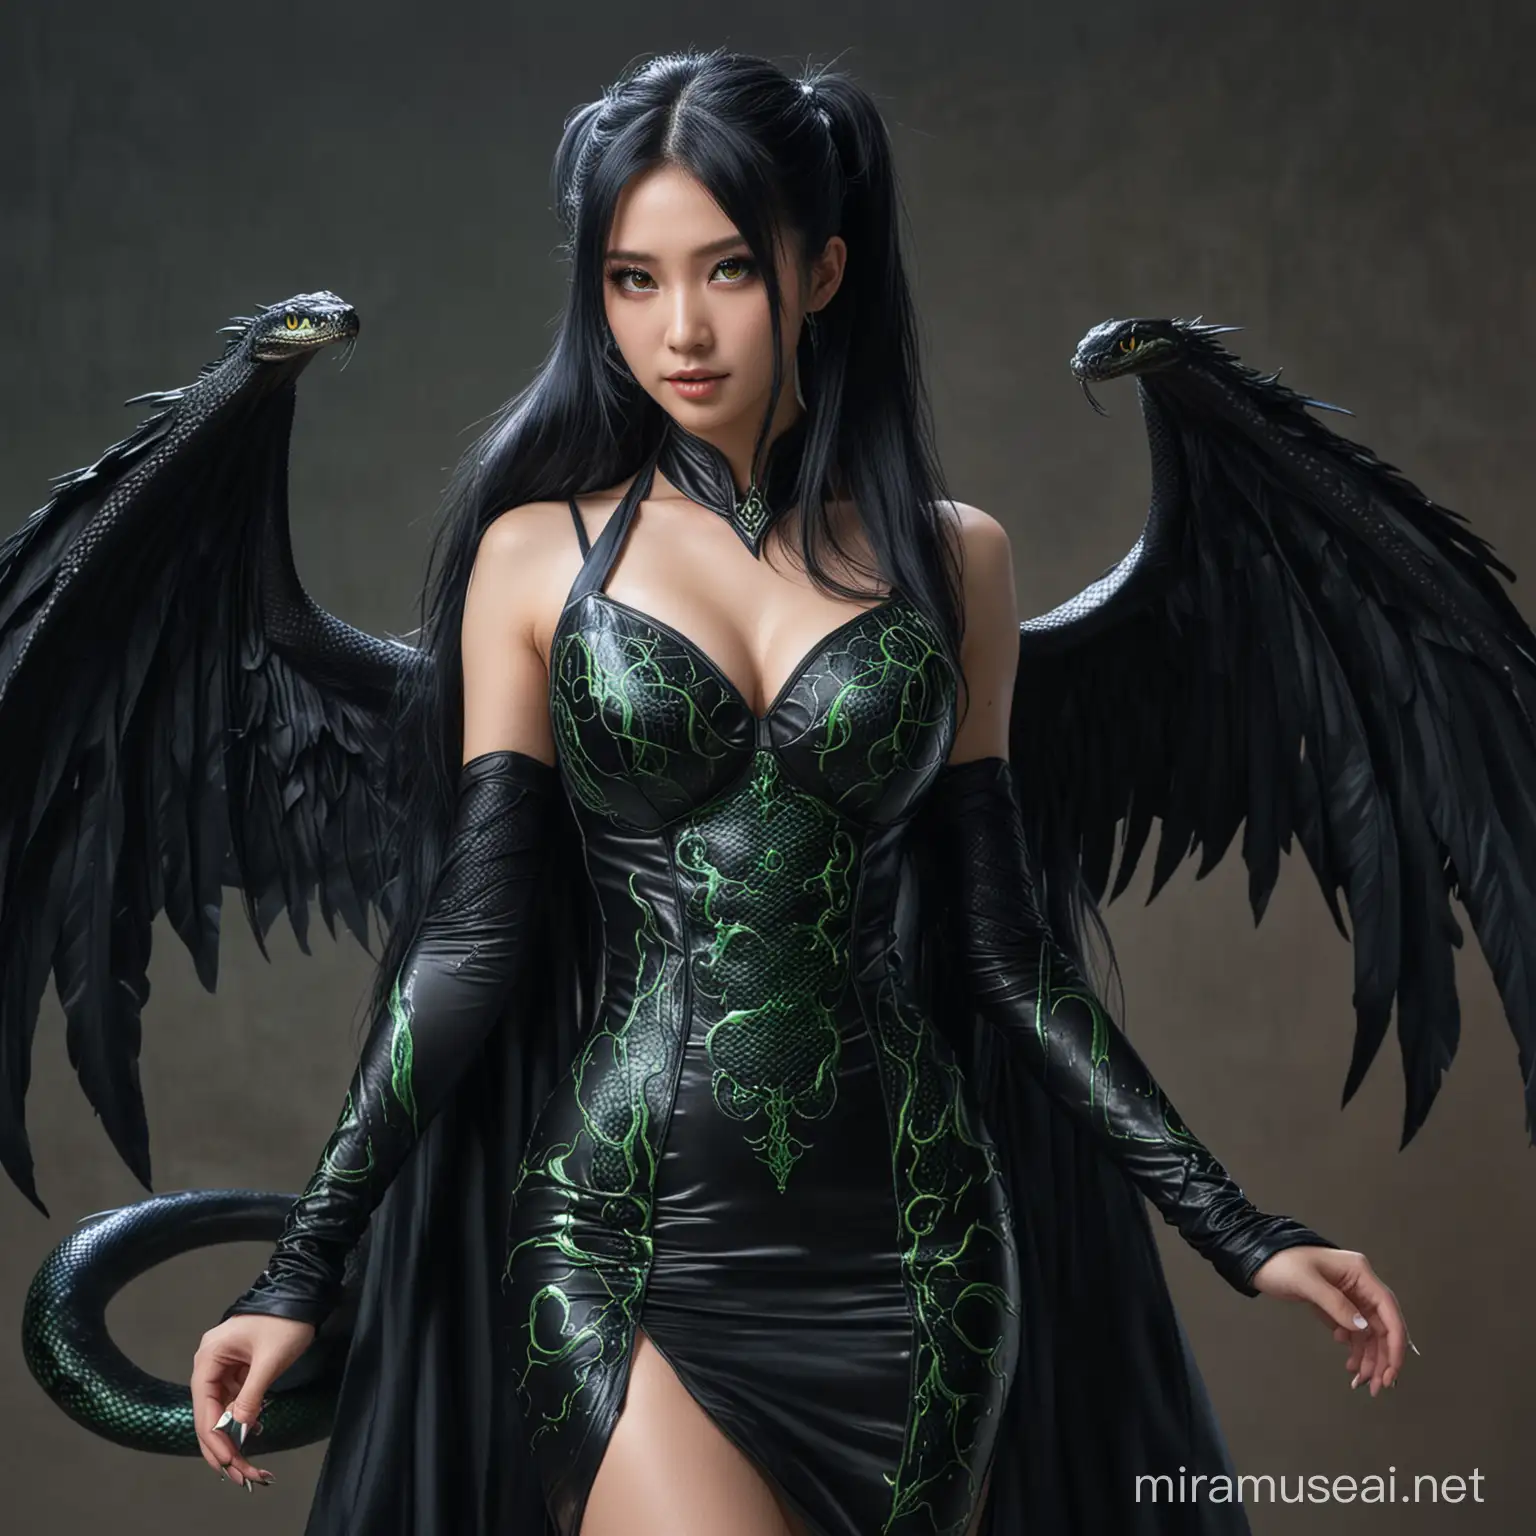 Japanese Vampire Queen in Full Body Snake Dress with Glittering Green Eyes